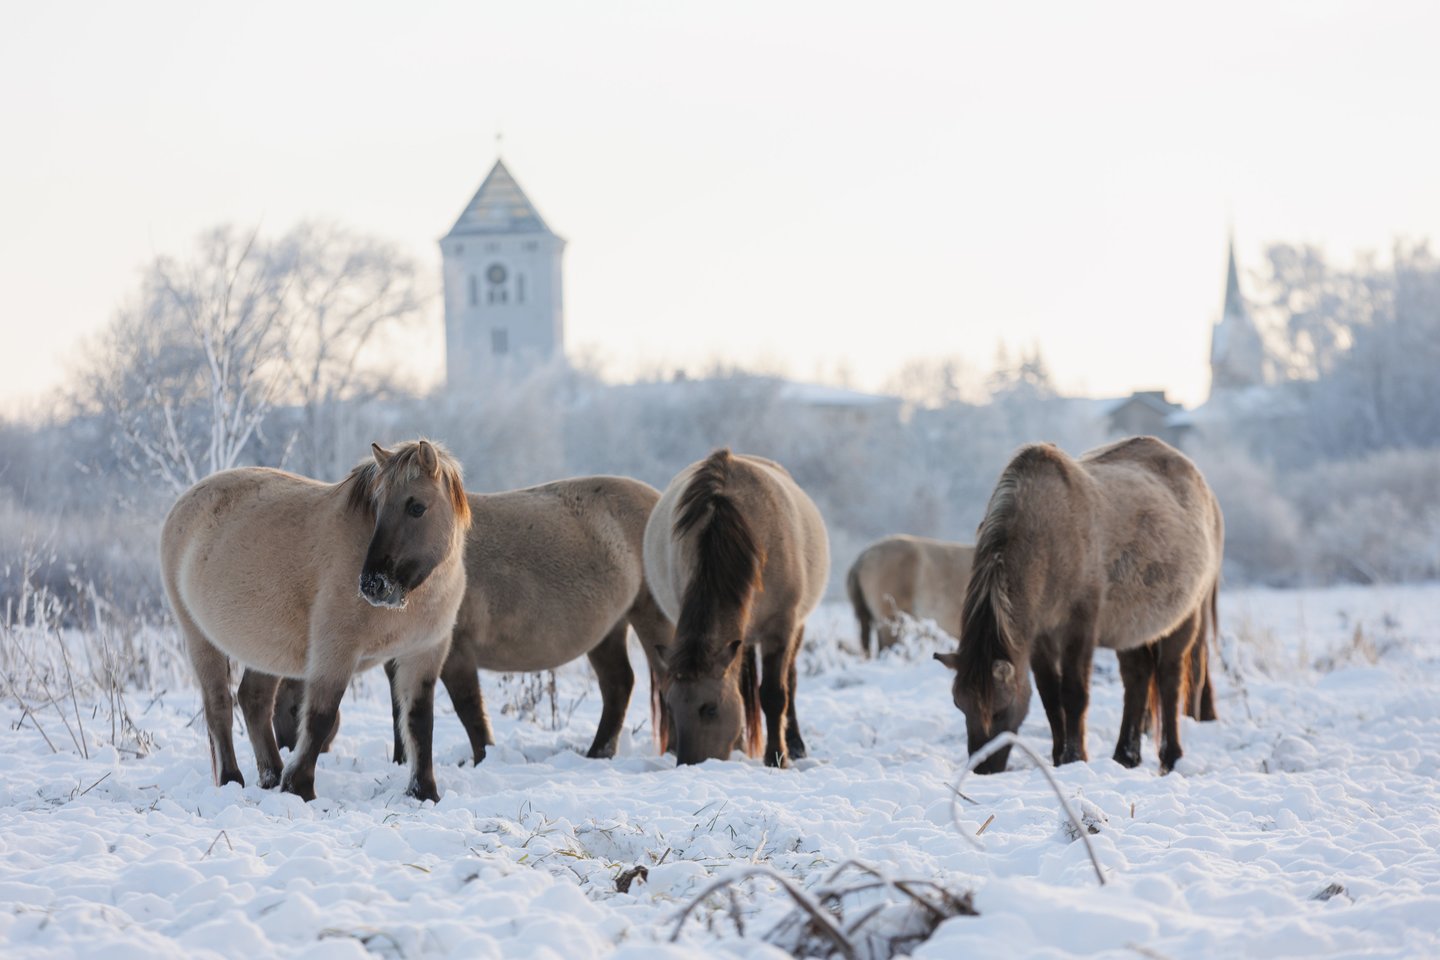 Laukiniai arkliai kiaurus metus ganosi Pilies saloje prie Jelgavos. O pajamų savininkas gauna iš apsilankančių turistų.<br> T.Bauro nuotr.